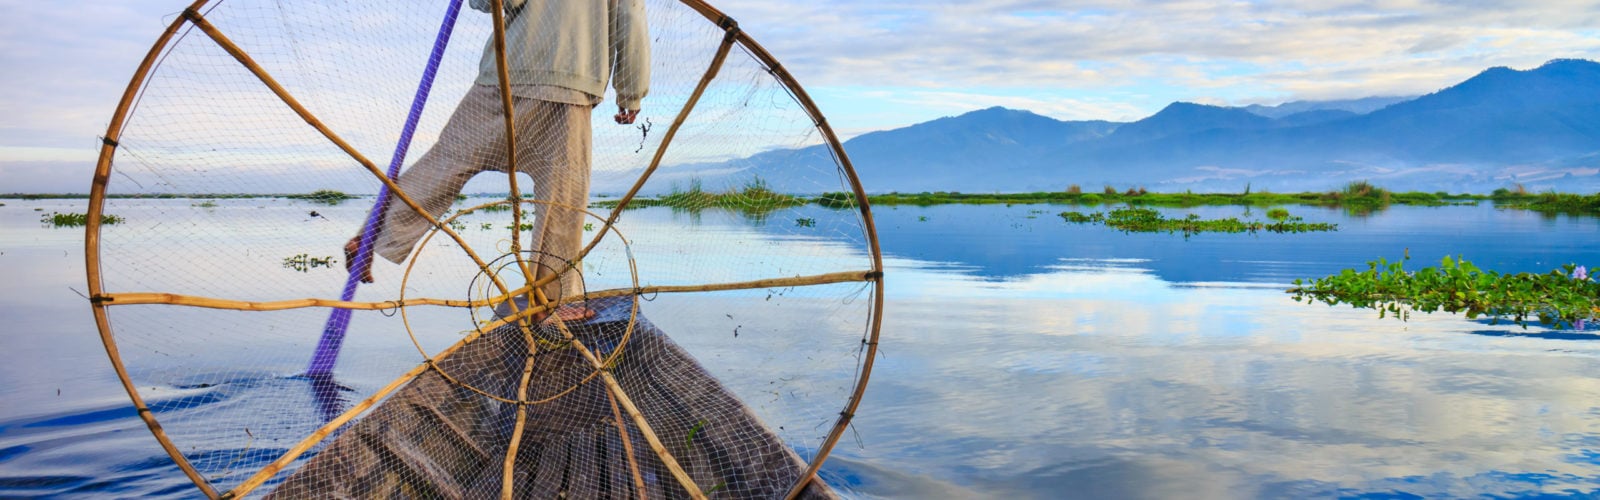 Fisherman on Inle Lake, Myanmar